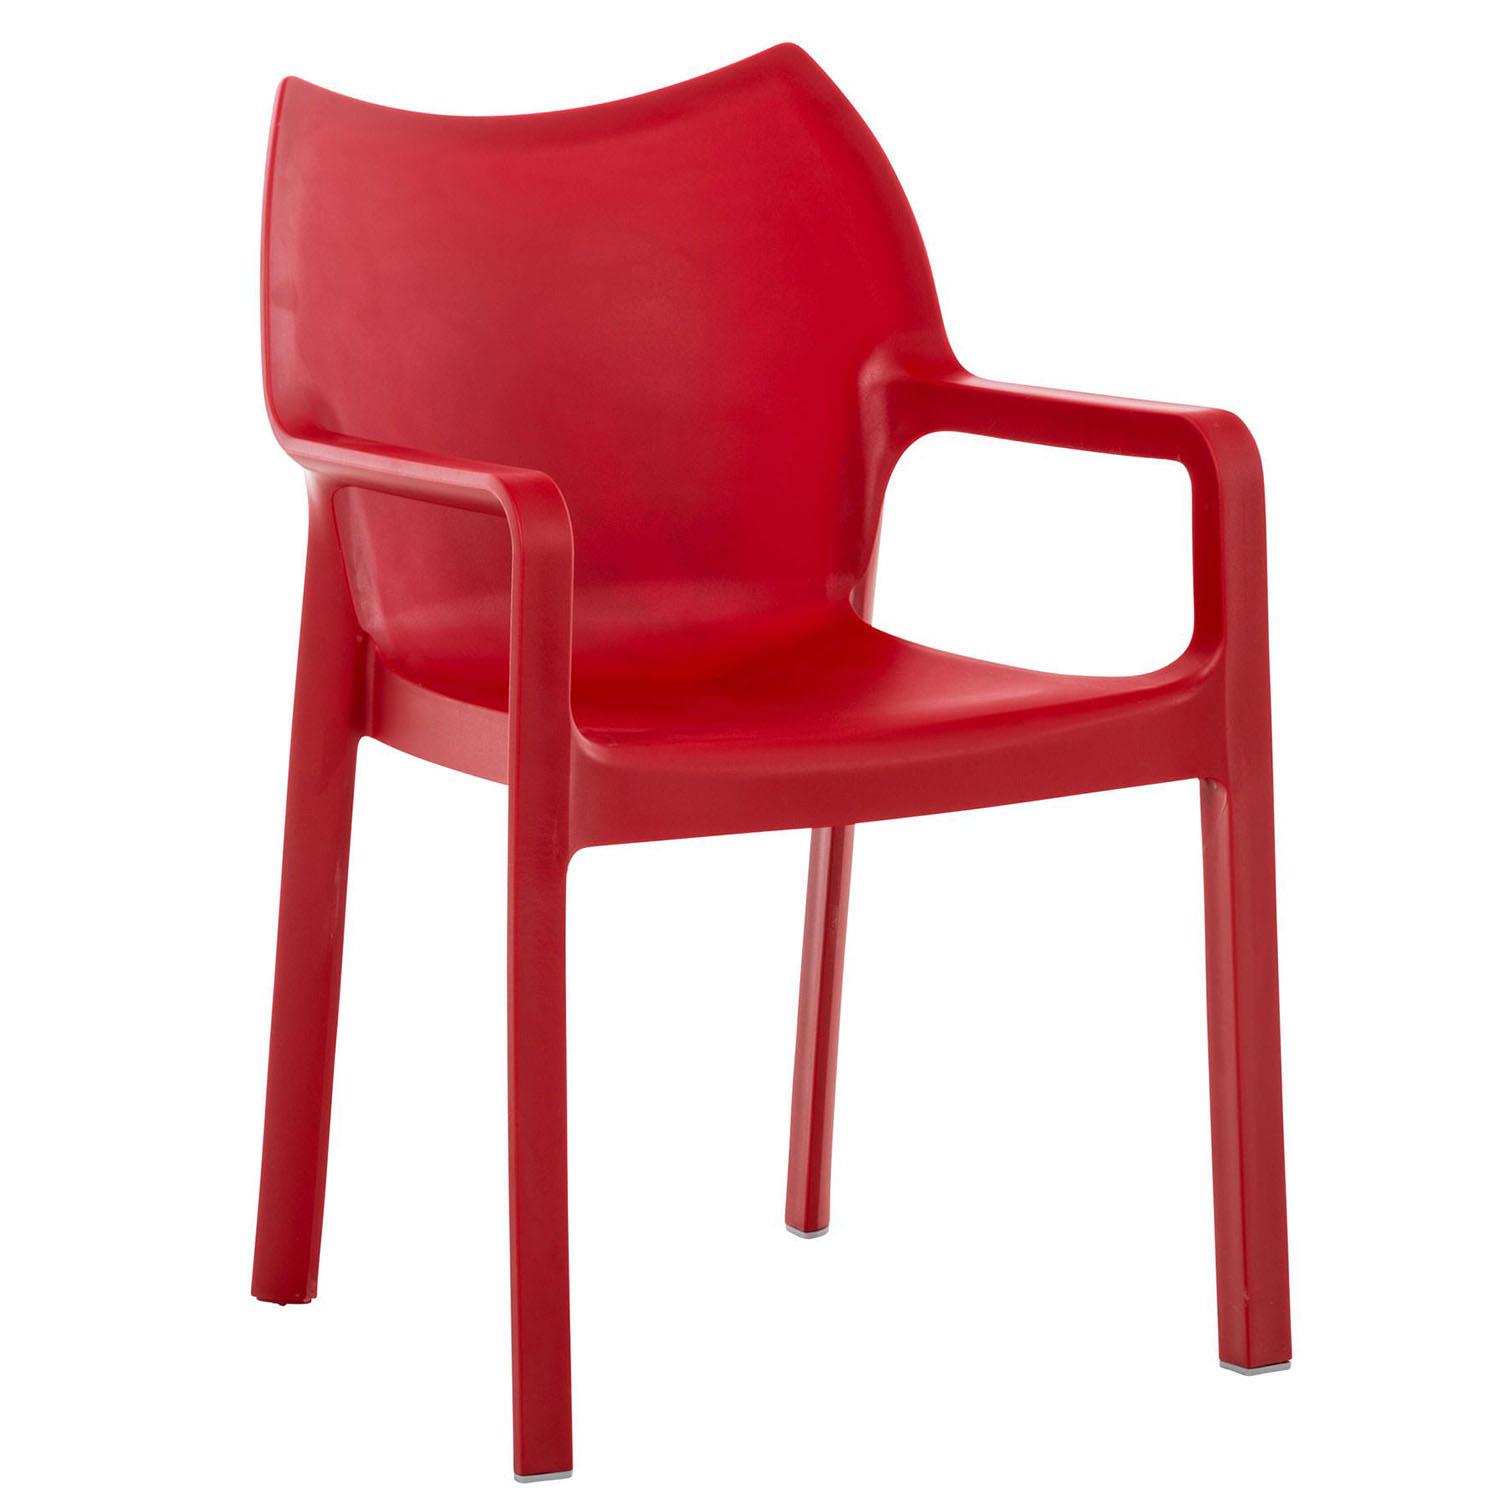 Cadeira de Visita RAMOS, Apoia Braços Integrados, Moderno e Resistente, Cor Vermelho